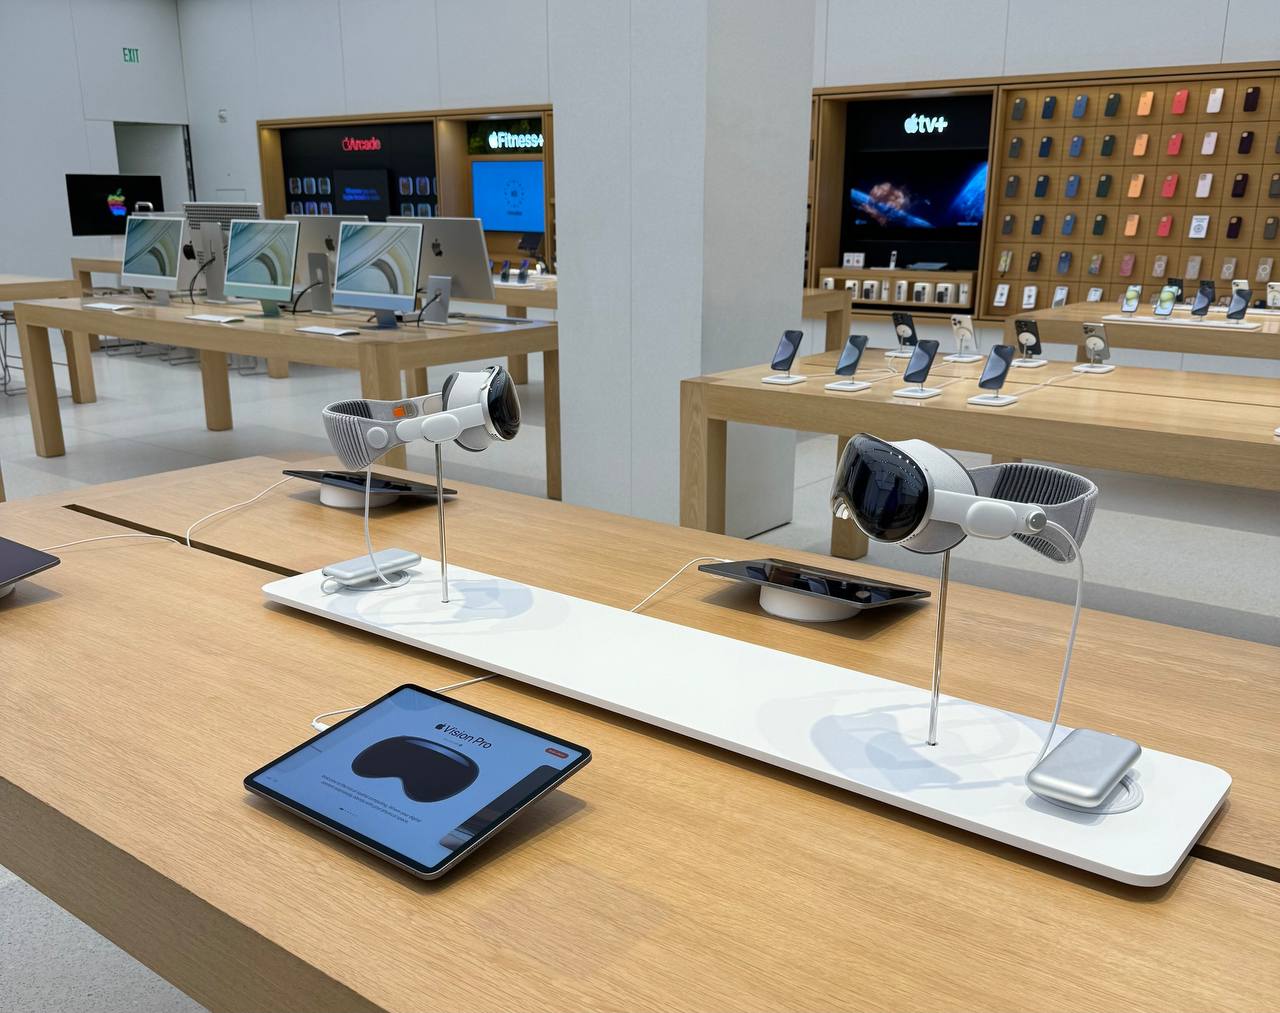 Так выглядит стол с новыми устройствами в магазине, примерить конкретно эти устройства не дадут